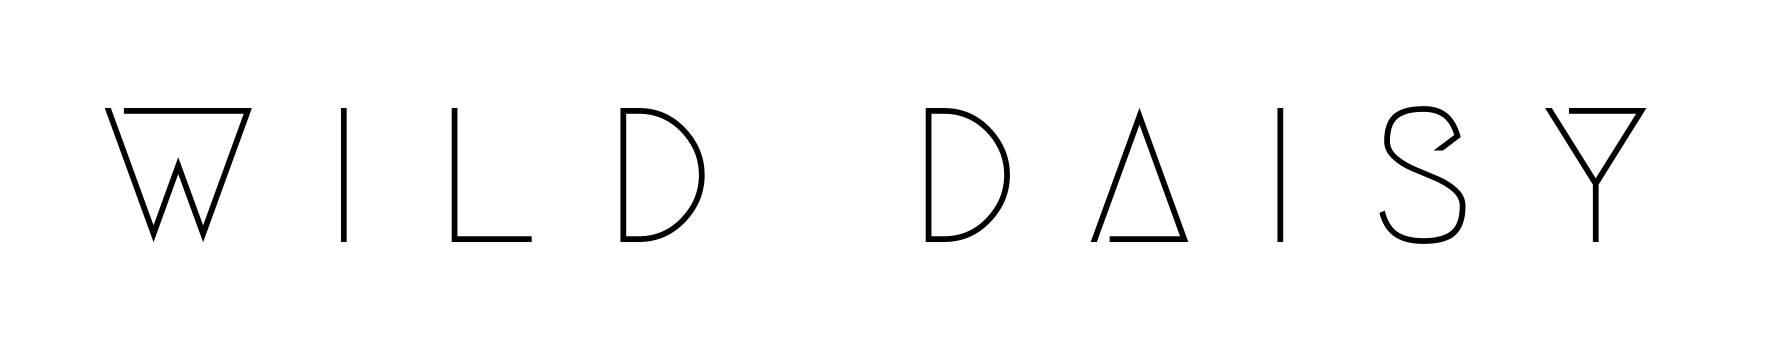 WILD-DAISY-logo-ohne-symbol-freigestellt-schwarz.png